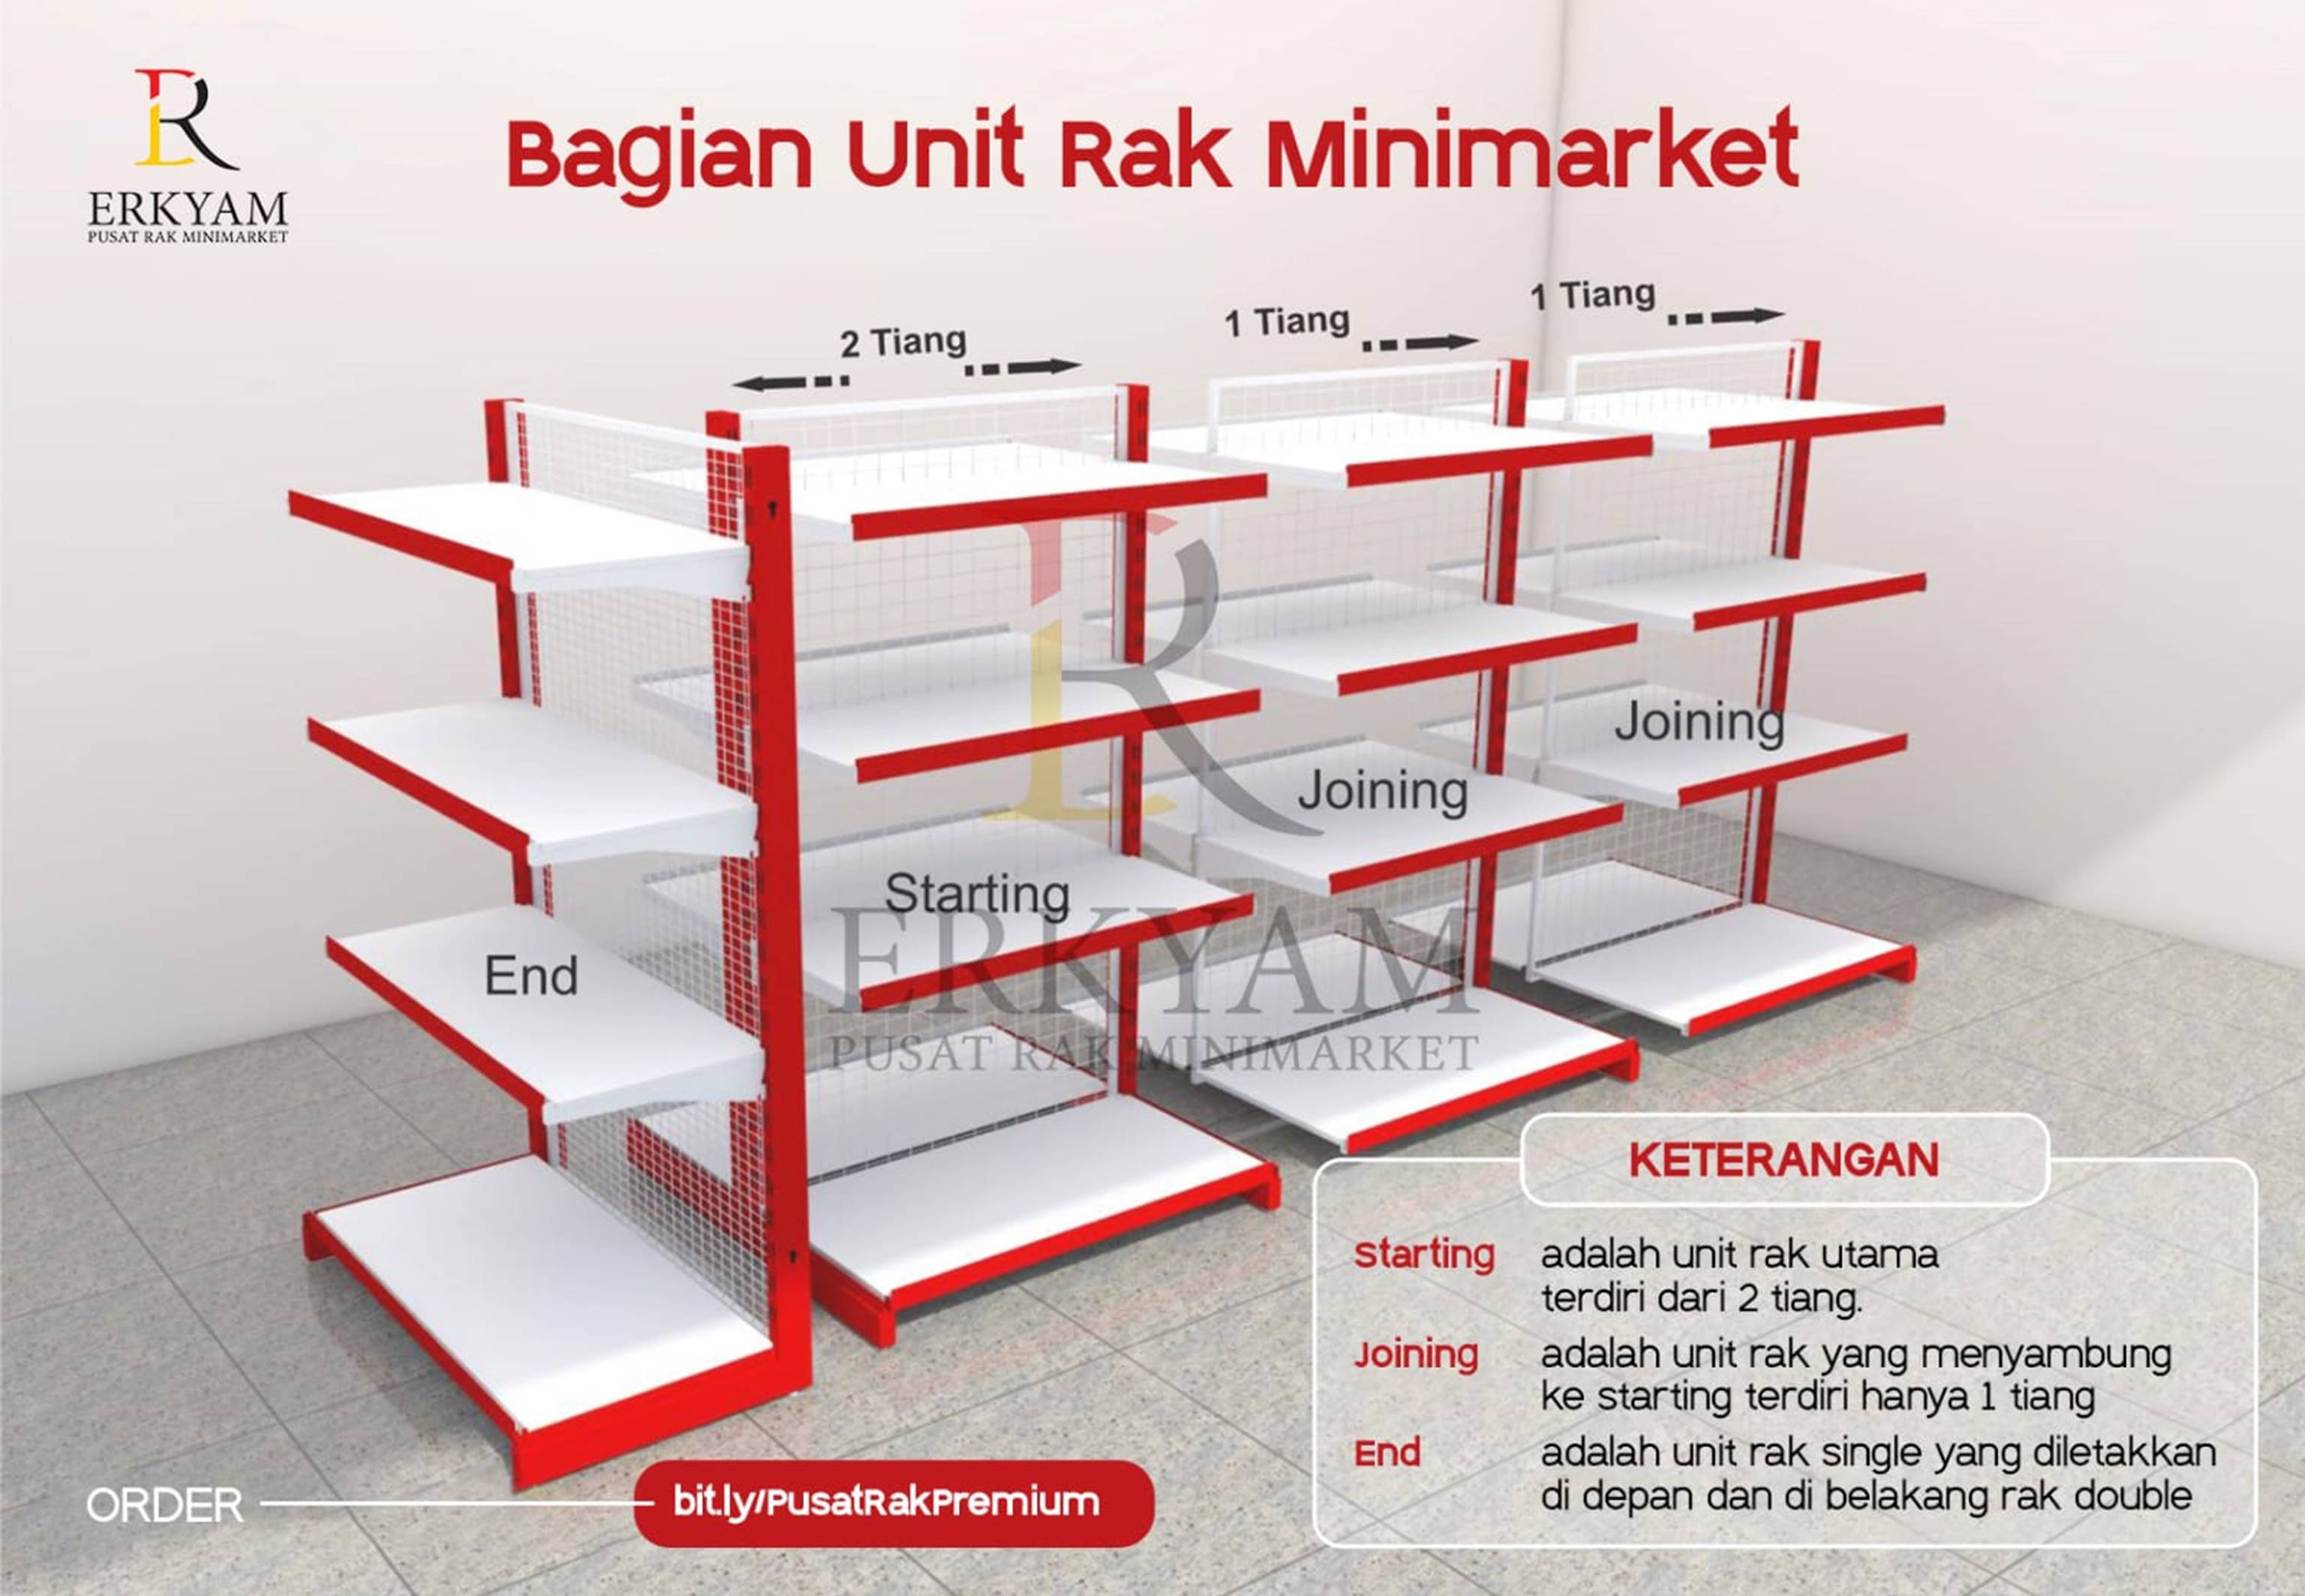 ERKYAM Pusat Rak Minimarket wilayah Semarang Jawa Tengah